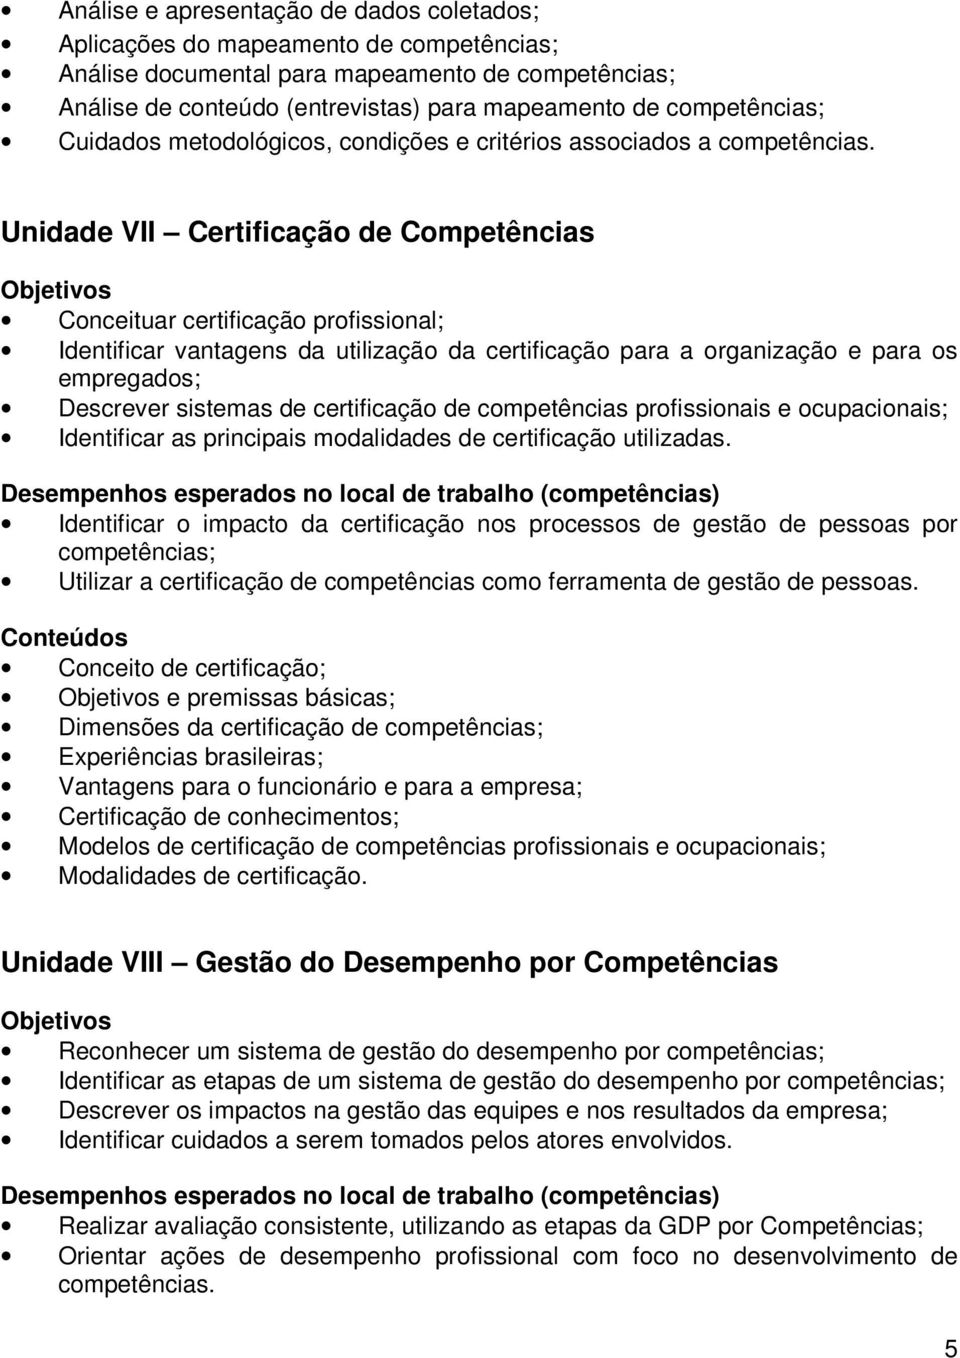 Unidade VII Certificação de Competências Conceituar certificação profissional; Identificar vantagens da utilização da certificação para a organização e para os empregados; Descrever sistemas de